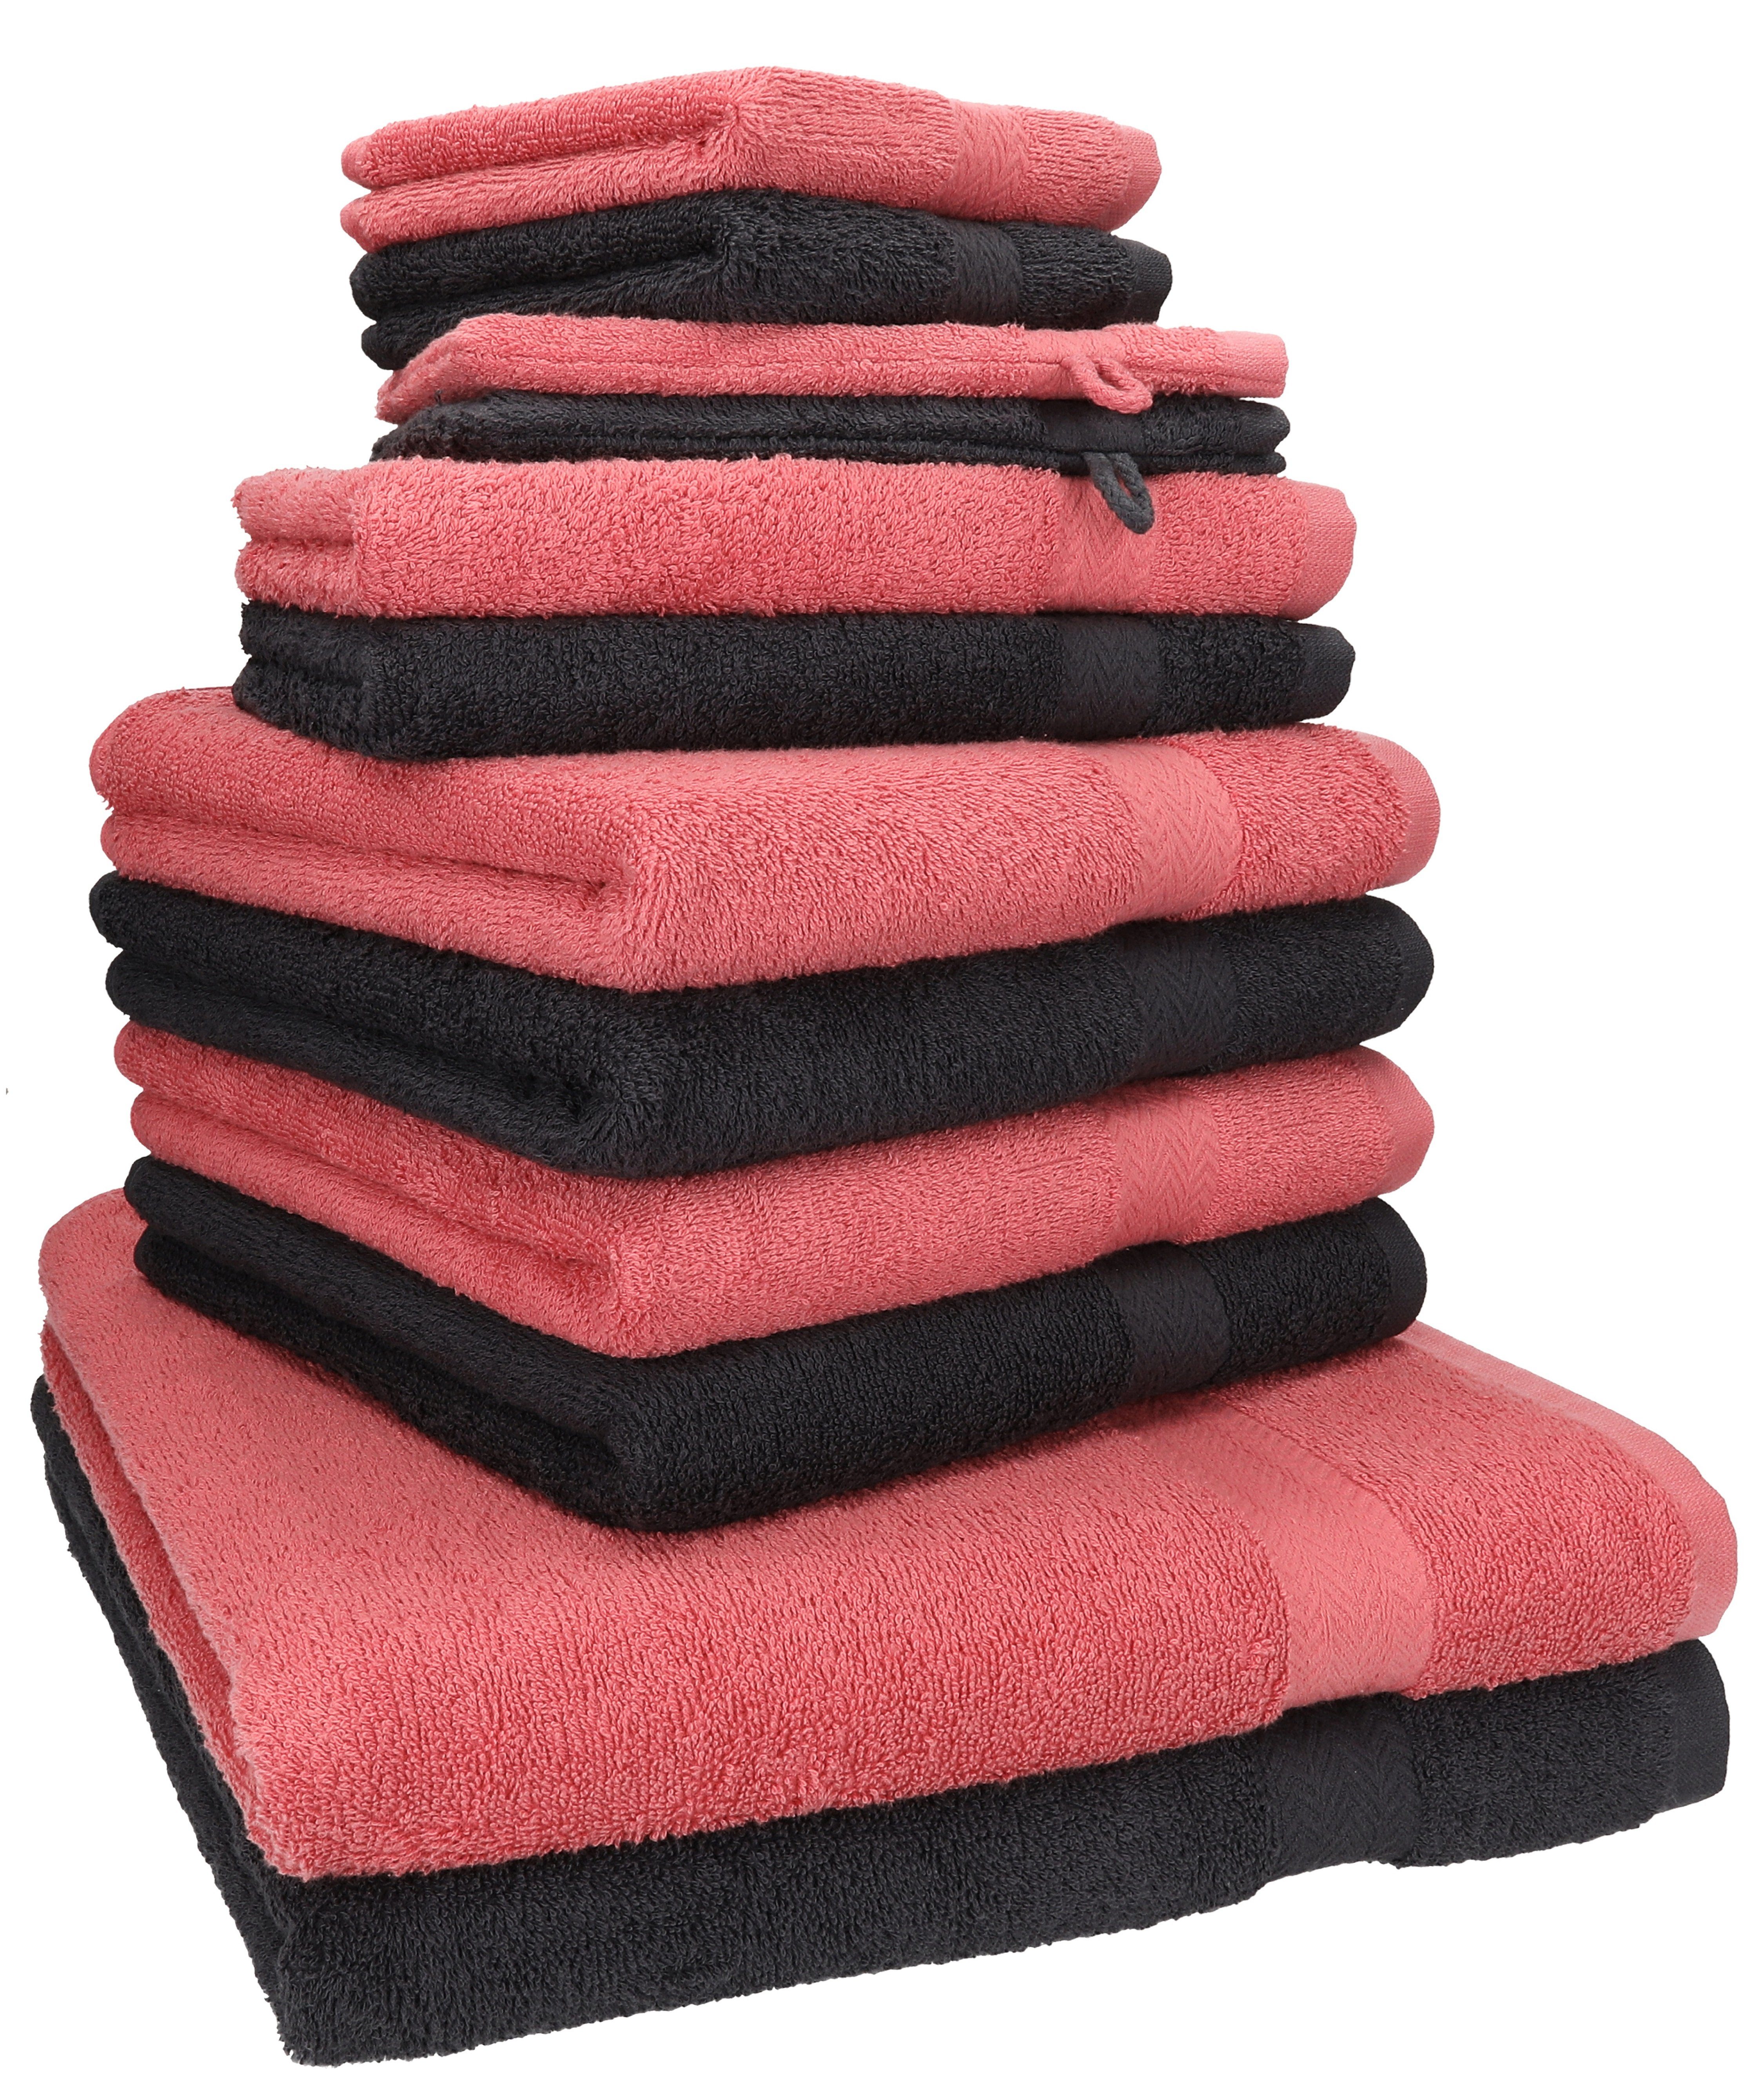 Betz Handtuch Set 12-TLG. Handtuch Set Premium Farbe Graphit/Himbeere, 100% Baumwolle, (12-tlg)